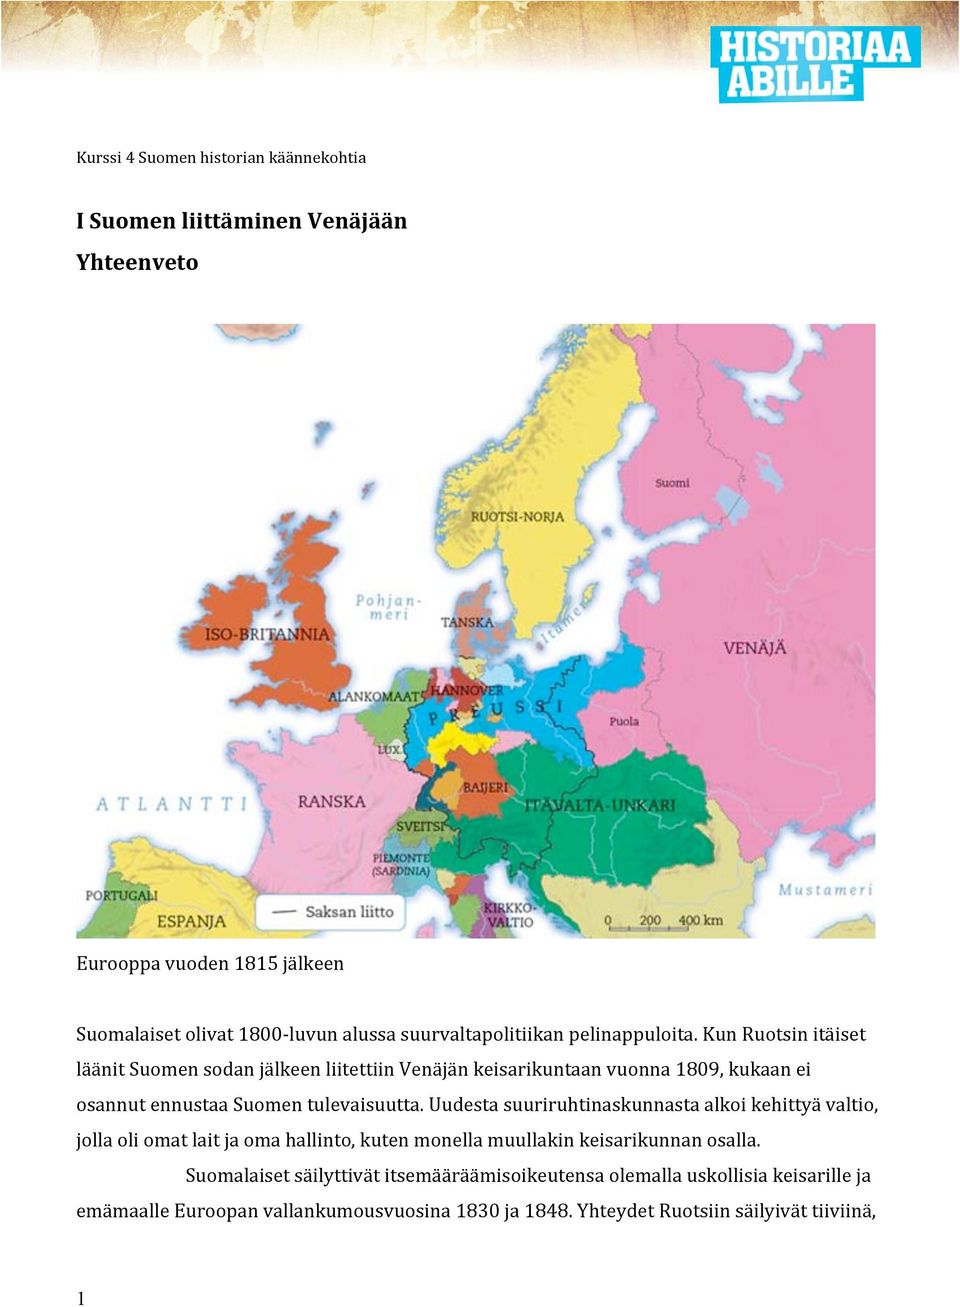 Kun Ruotsin itäiset läänit Suomen sodan jälkeen liitettiin Venäjän keisarikuntaan vuonna 1809, kukaan ei osannut ennustaa Suomen tulevaisuutta.